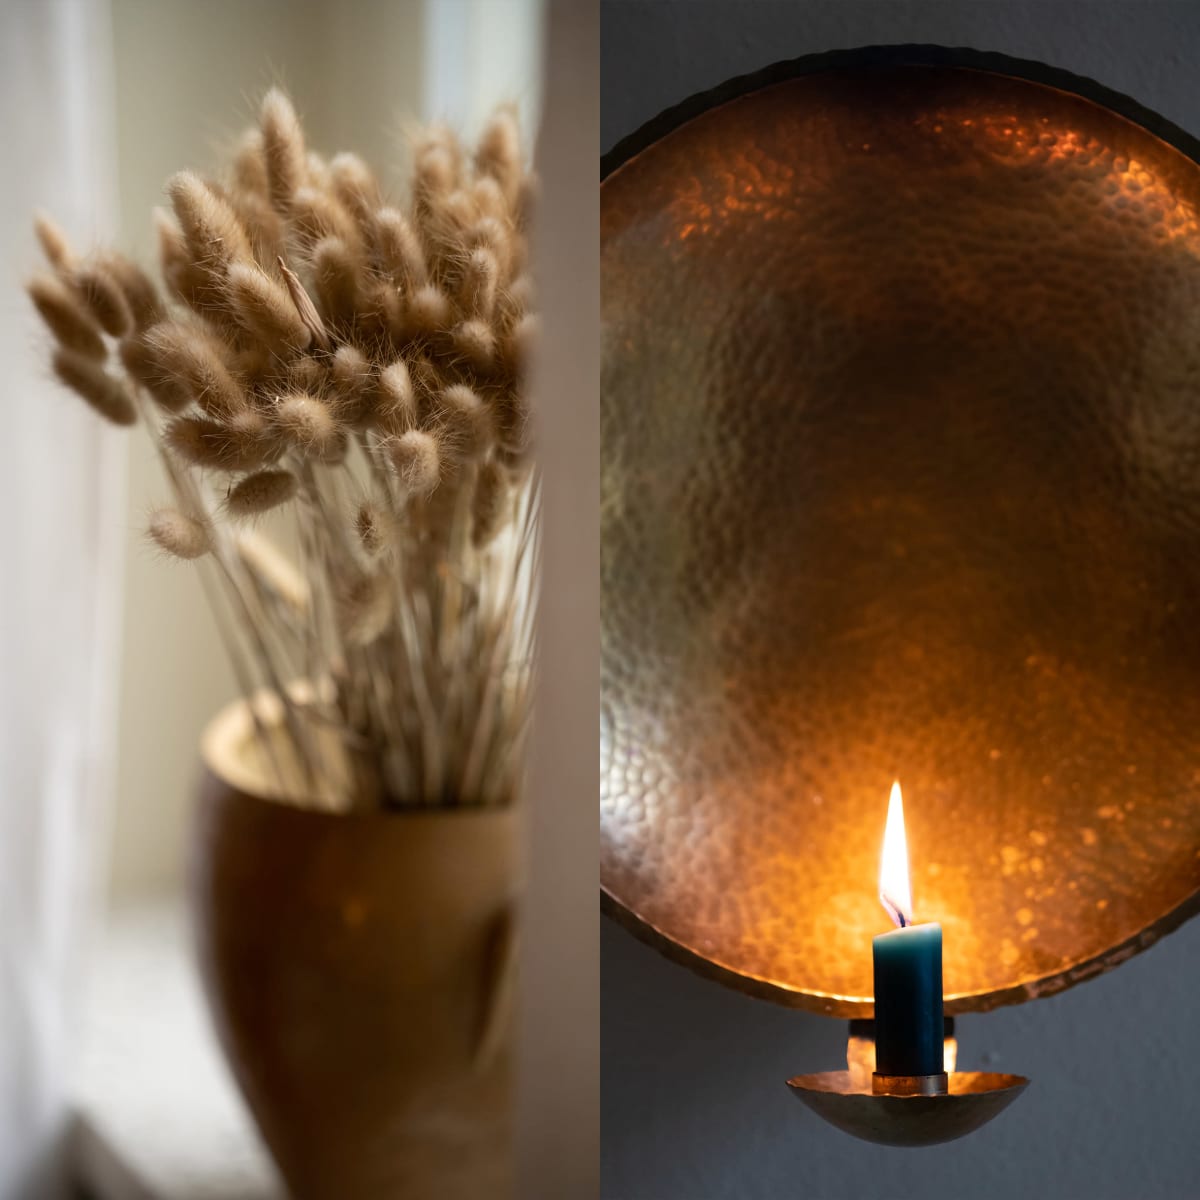 Kahden kuvan kollaasi, jossa toisessa heiniä maljakossa ja toisessa kynttilä lampetissa.